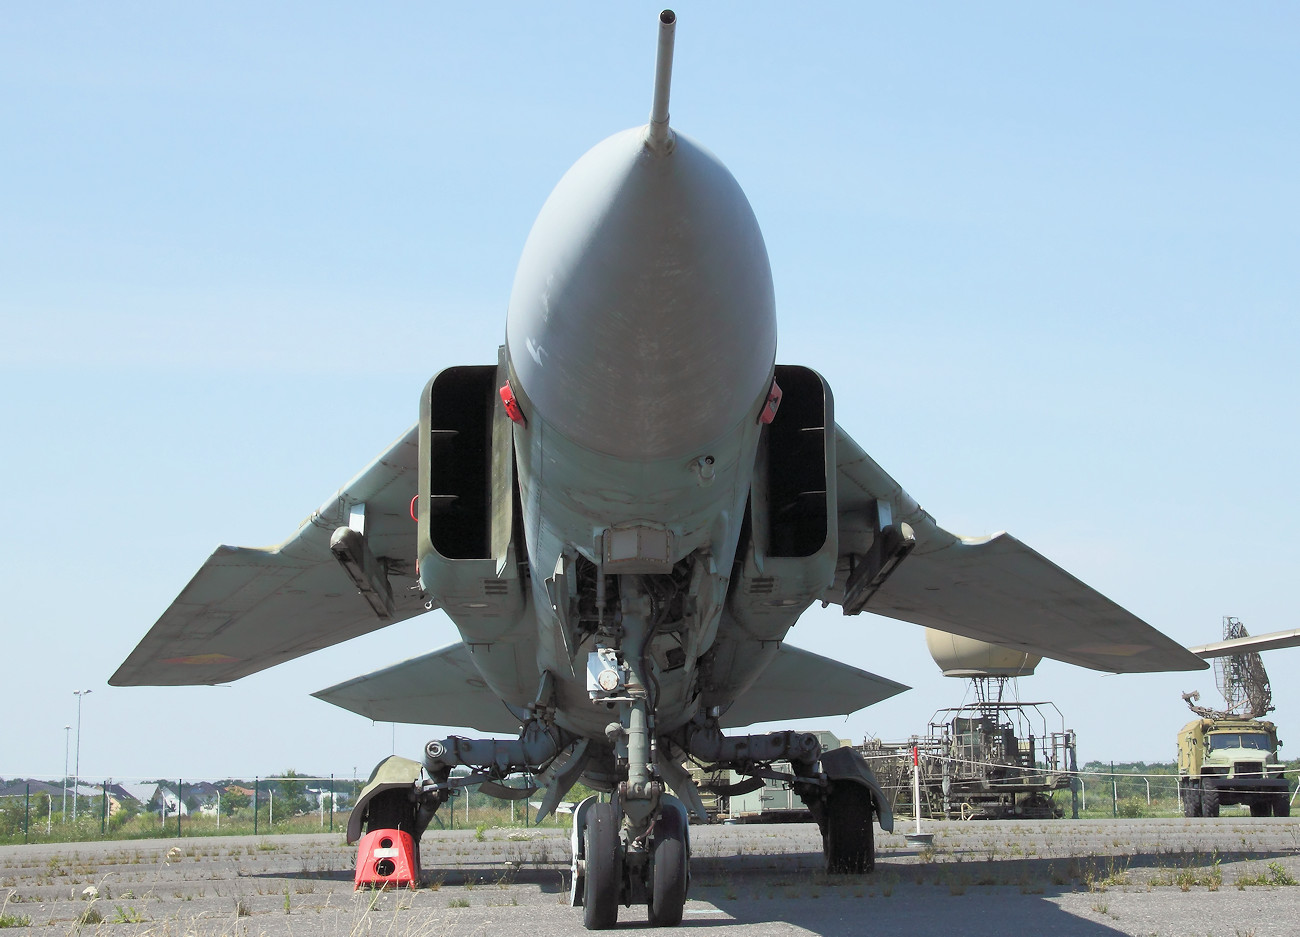 MiG-23 MF - Kampfjet